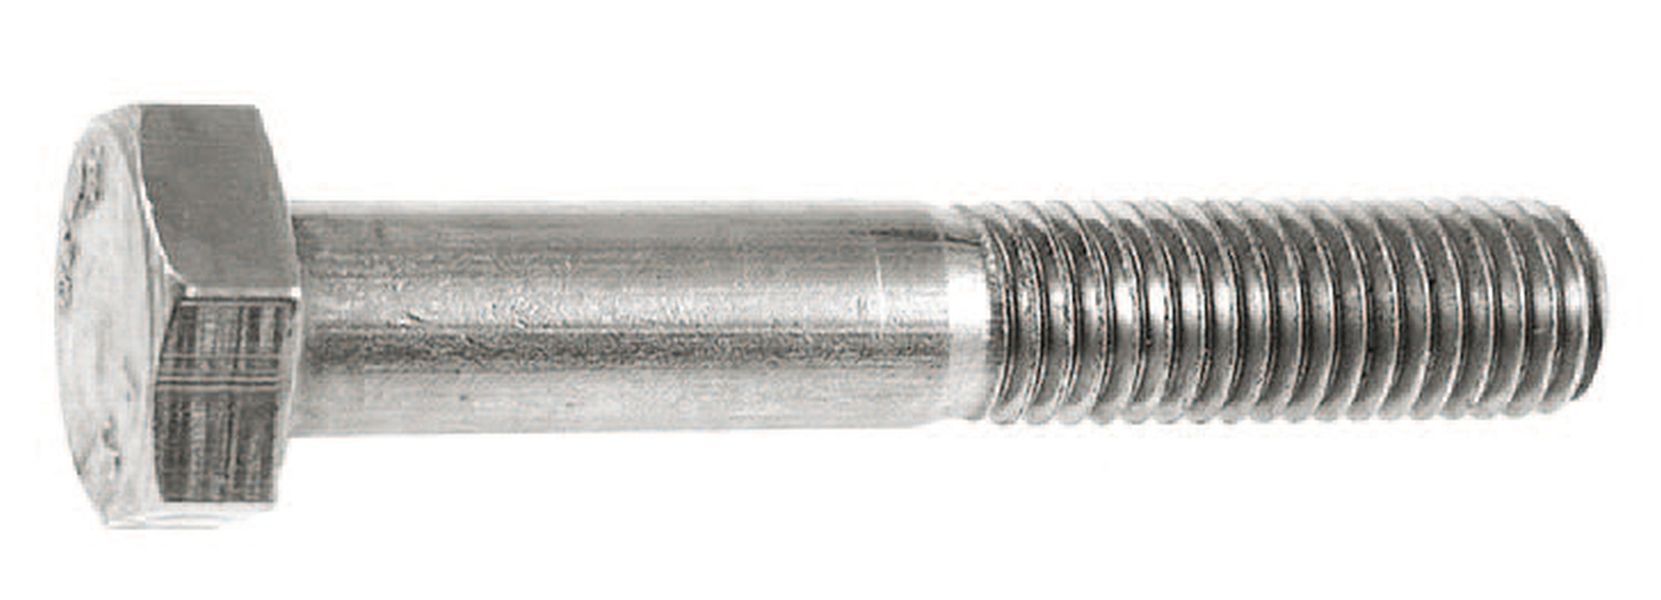 Hexagonal bolts - M8 x 40 mm - 2 pcs. - V4A - shaft